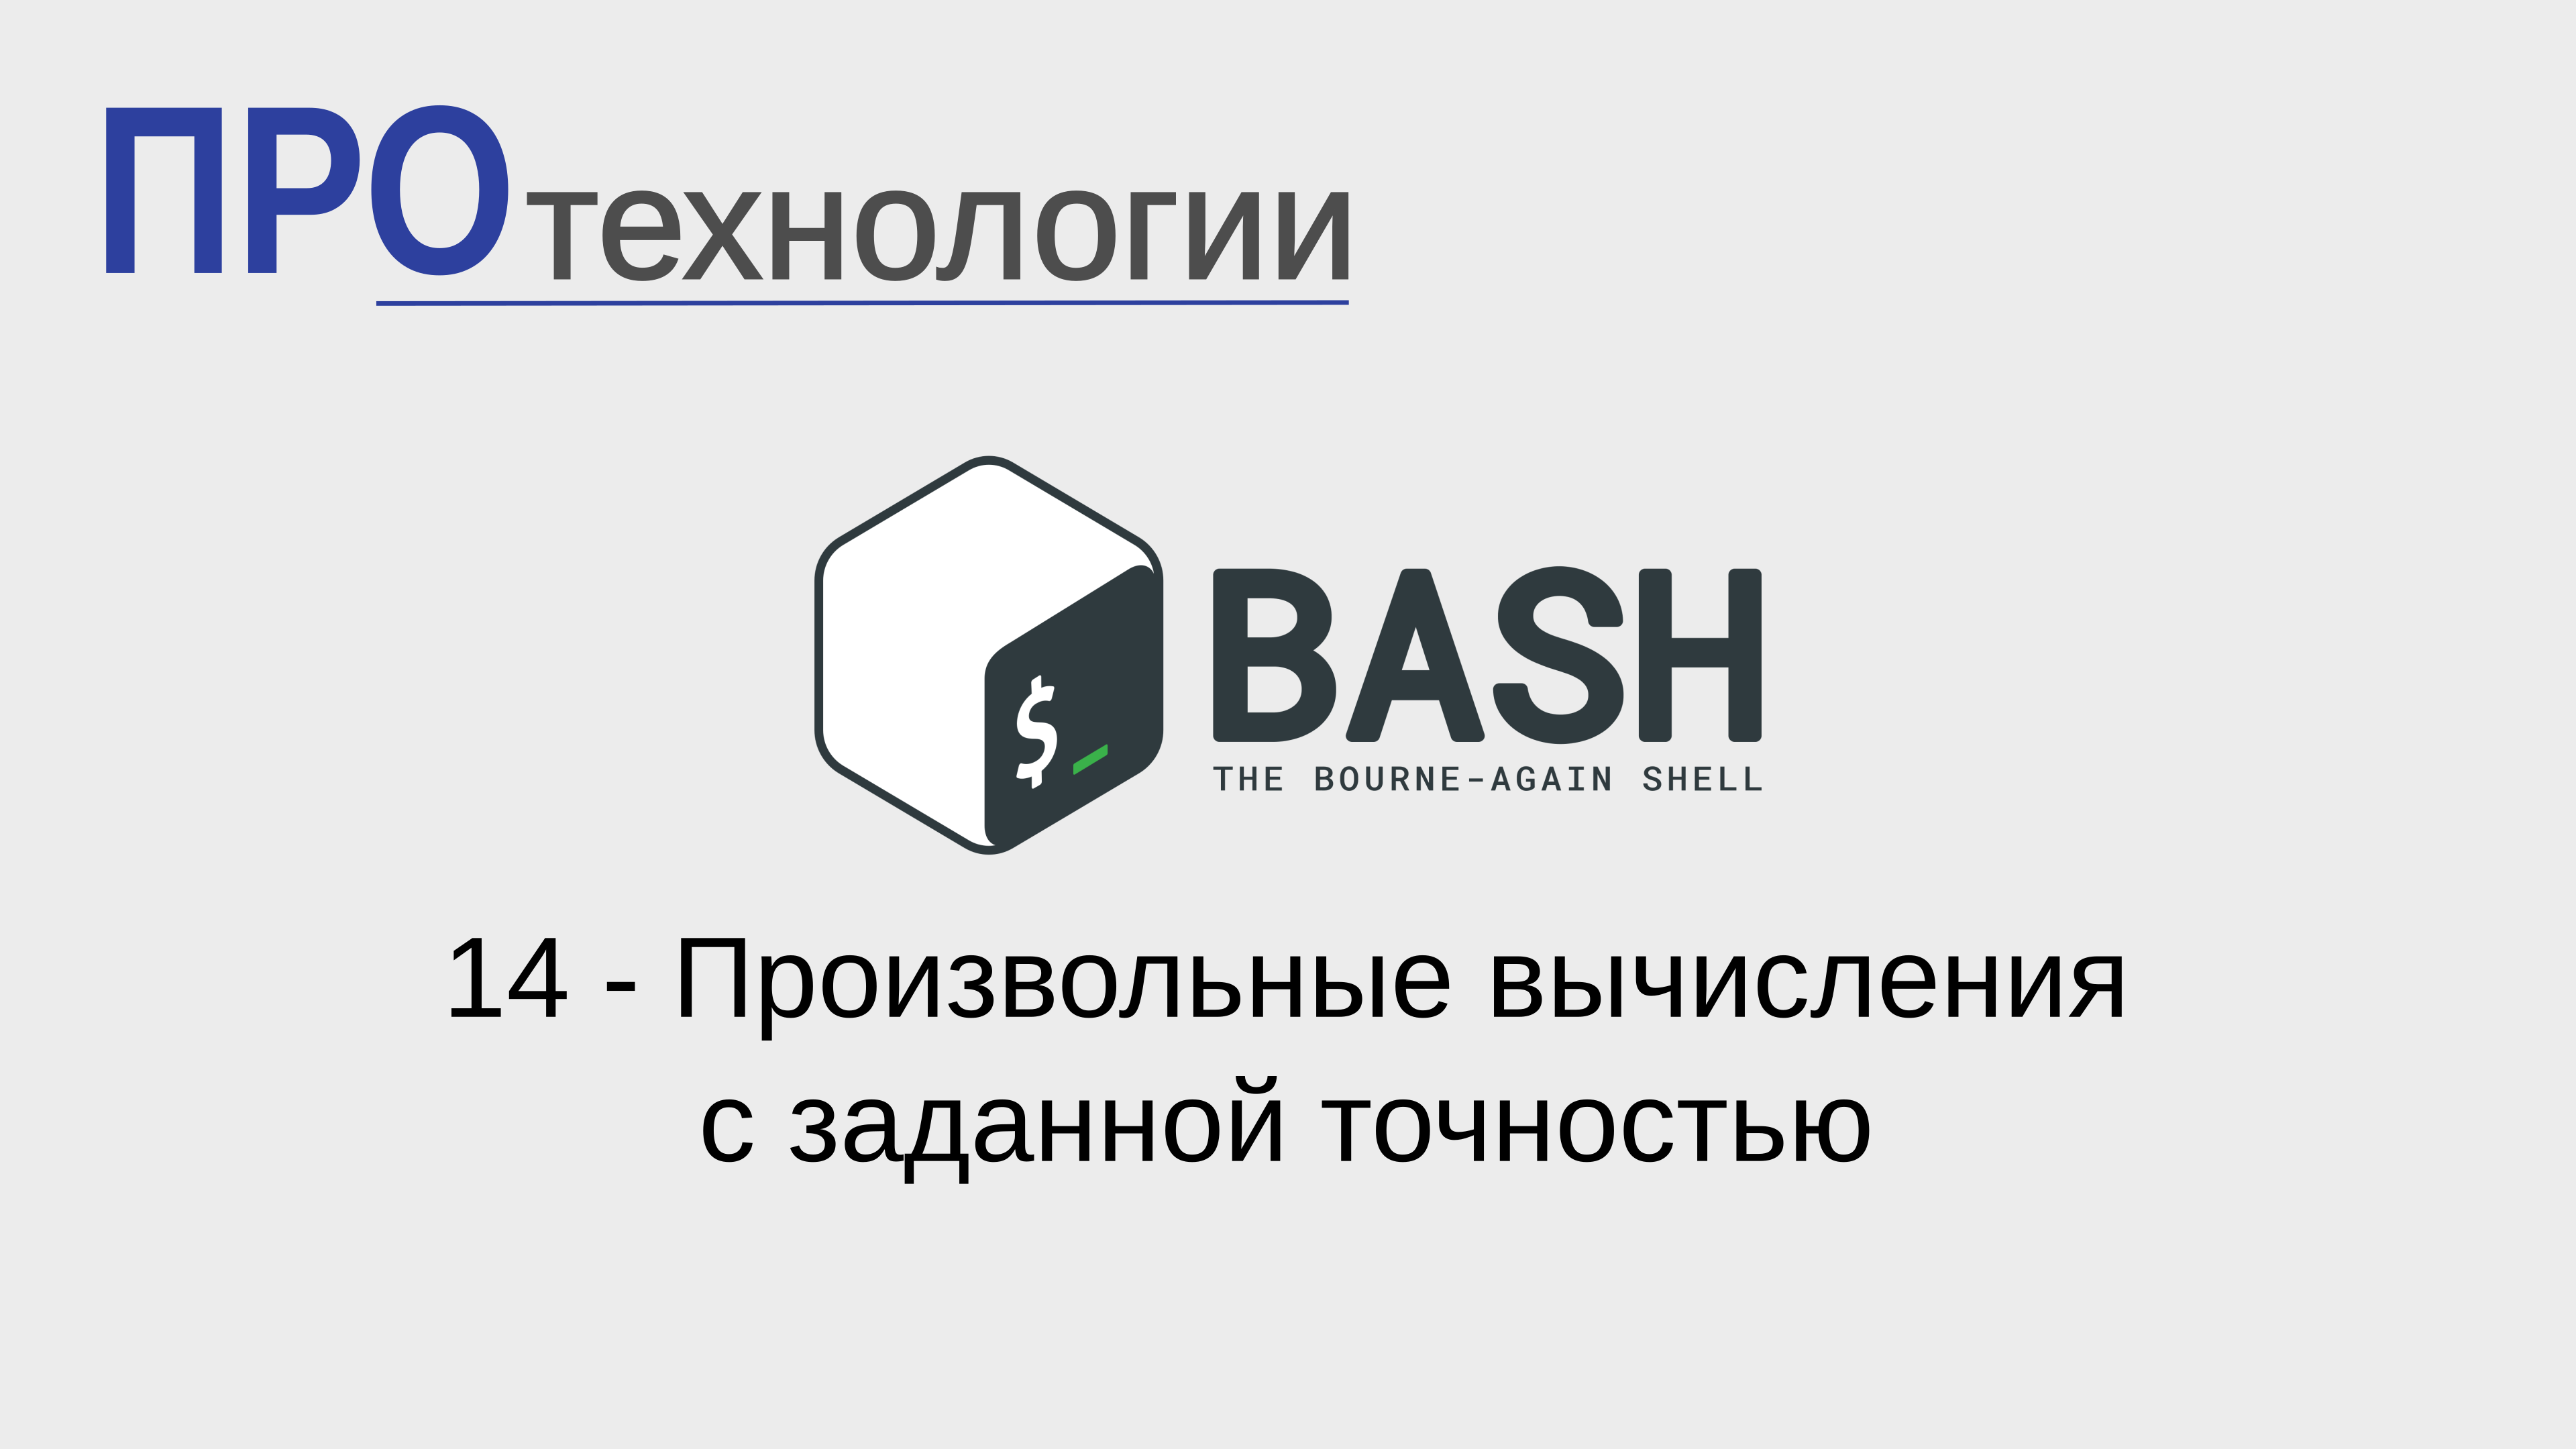 14 Bash - Произвольные вычисления с заданной точностью